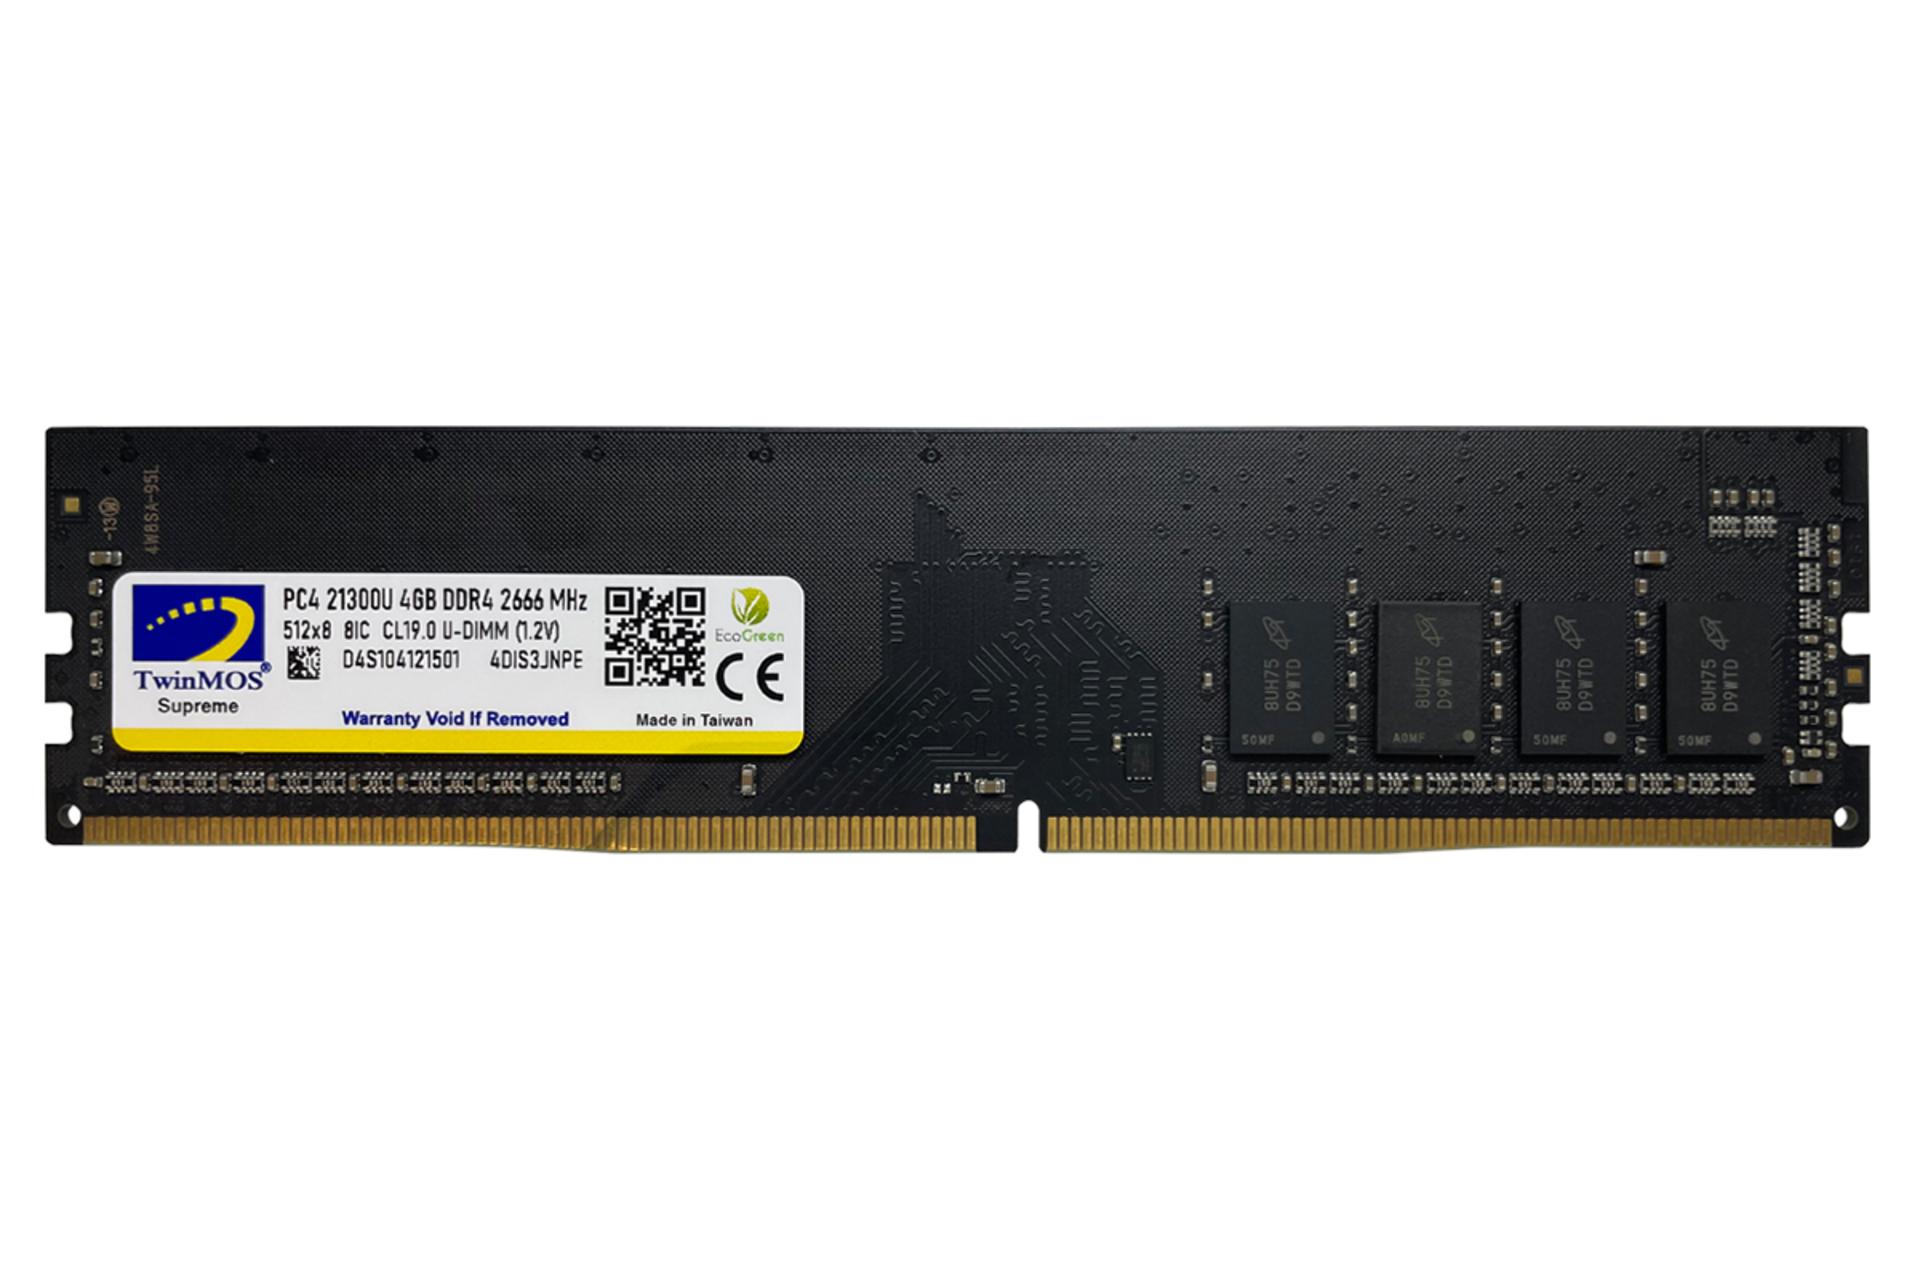 رم توین موس MDD44GB2666D ظرفیت 4 گیگابایت از نوع DDR4-2666